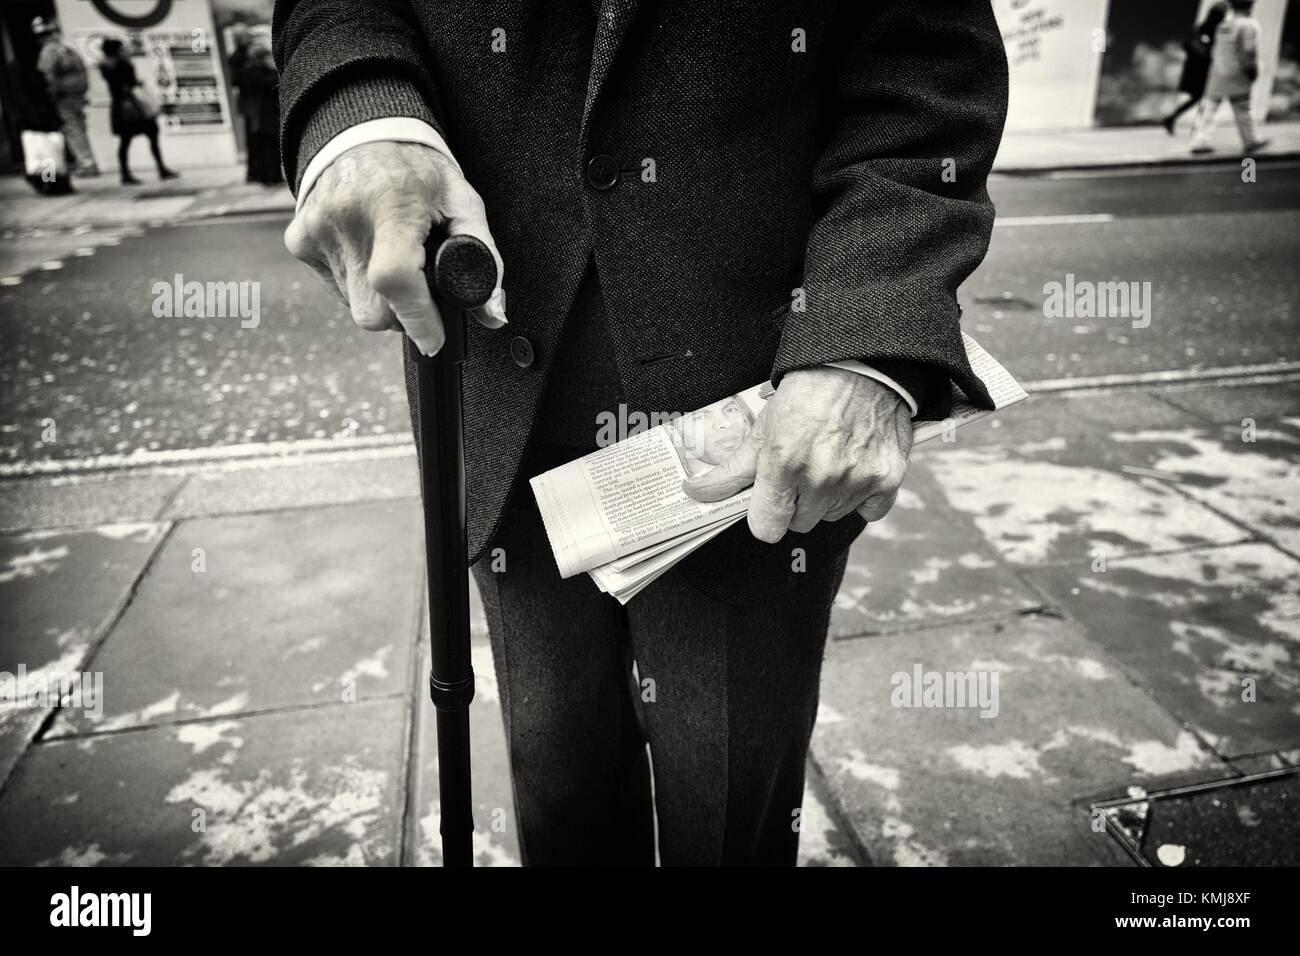 Primer plano de un hombre mayor irreconocible con un baston en una mano y un periodico en la otra. Oxford St., Londres, Uk, Europa. Stock Photo